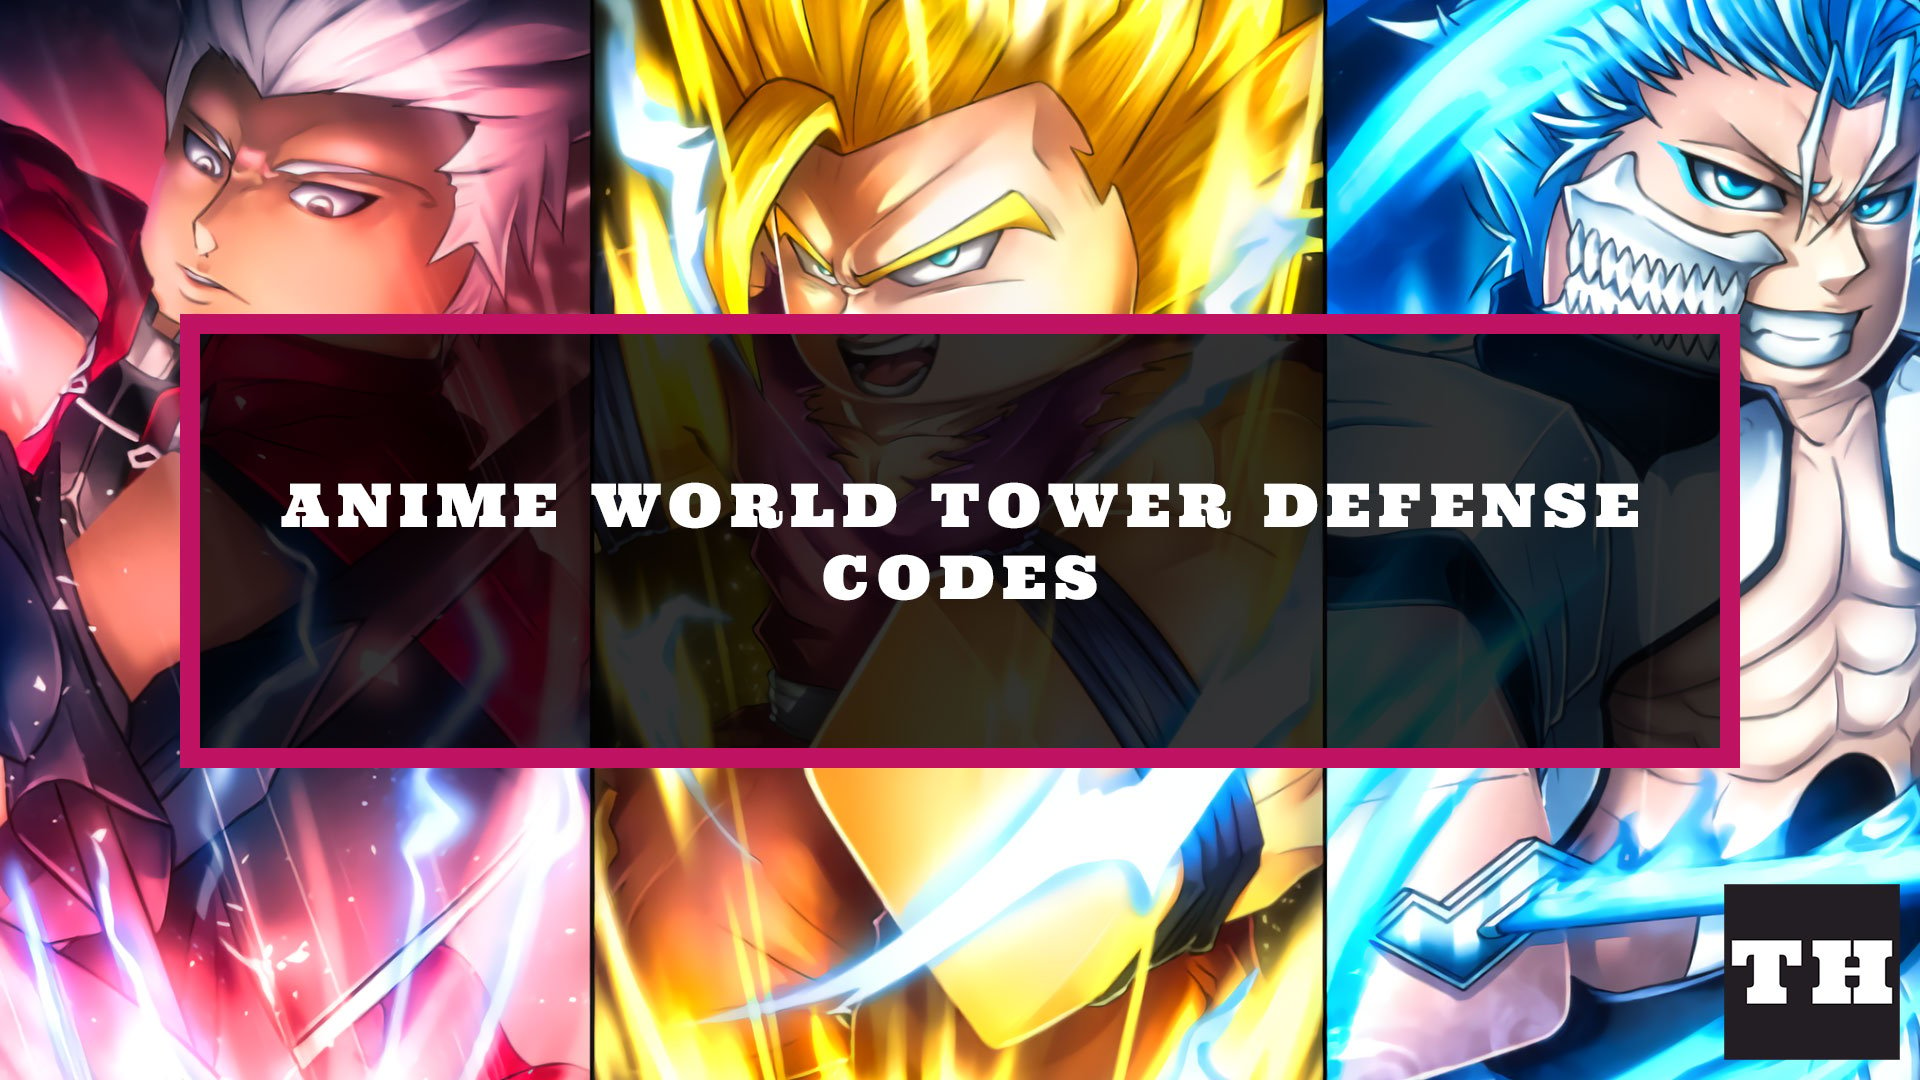 Code Anime World Tower Defense MỚI NHẤT, hướng dẫn nhập code